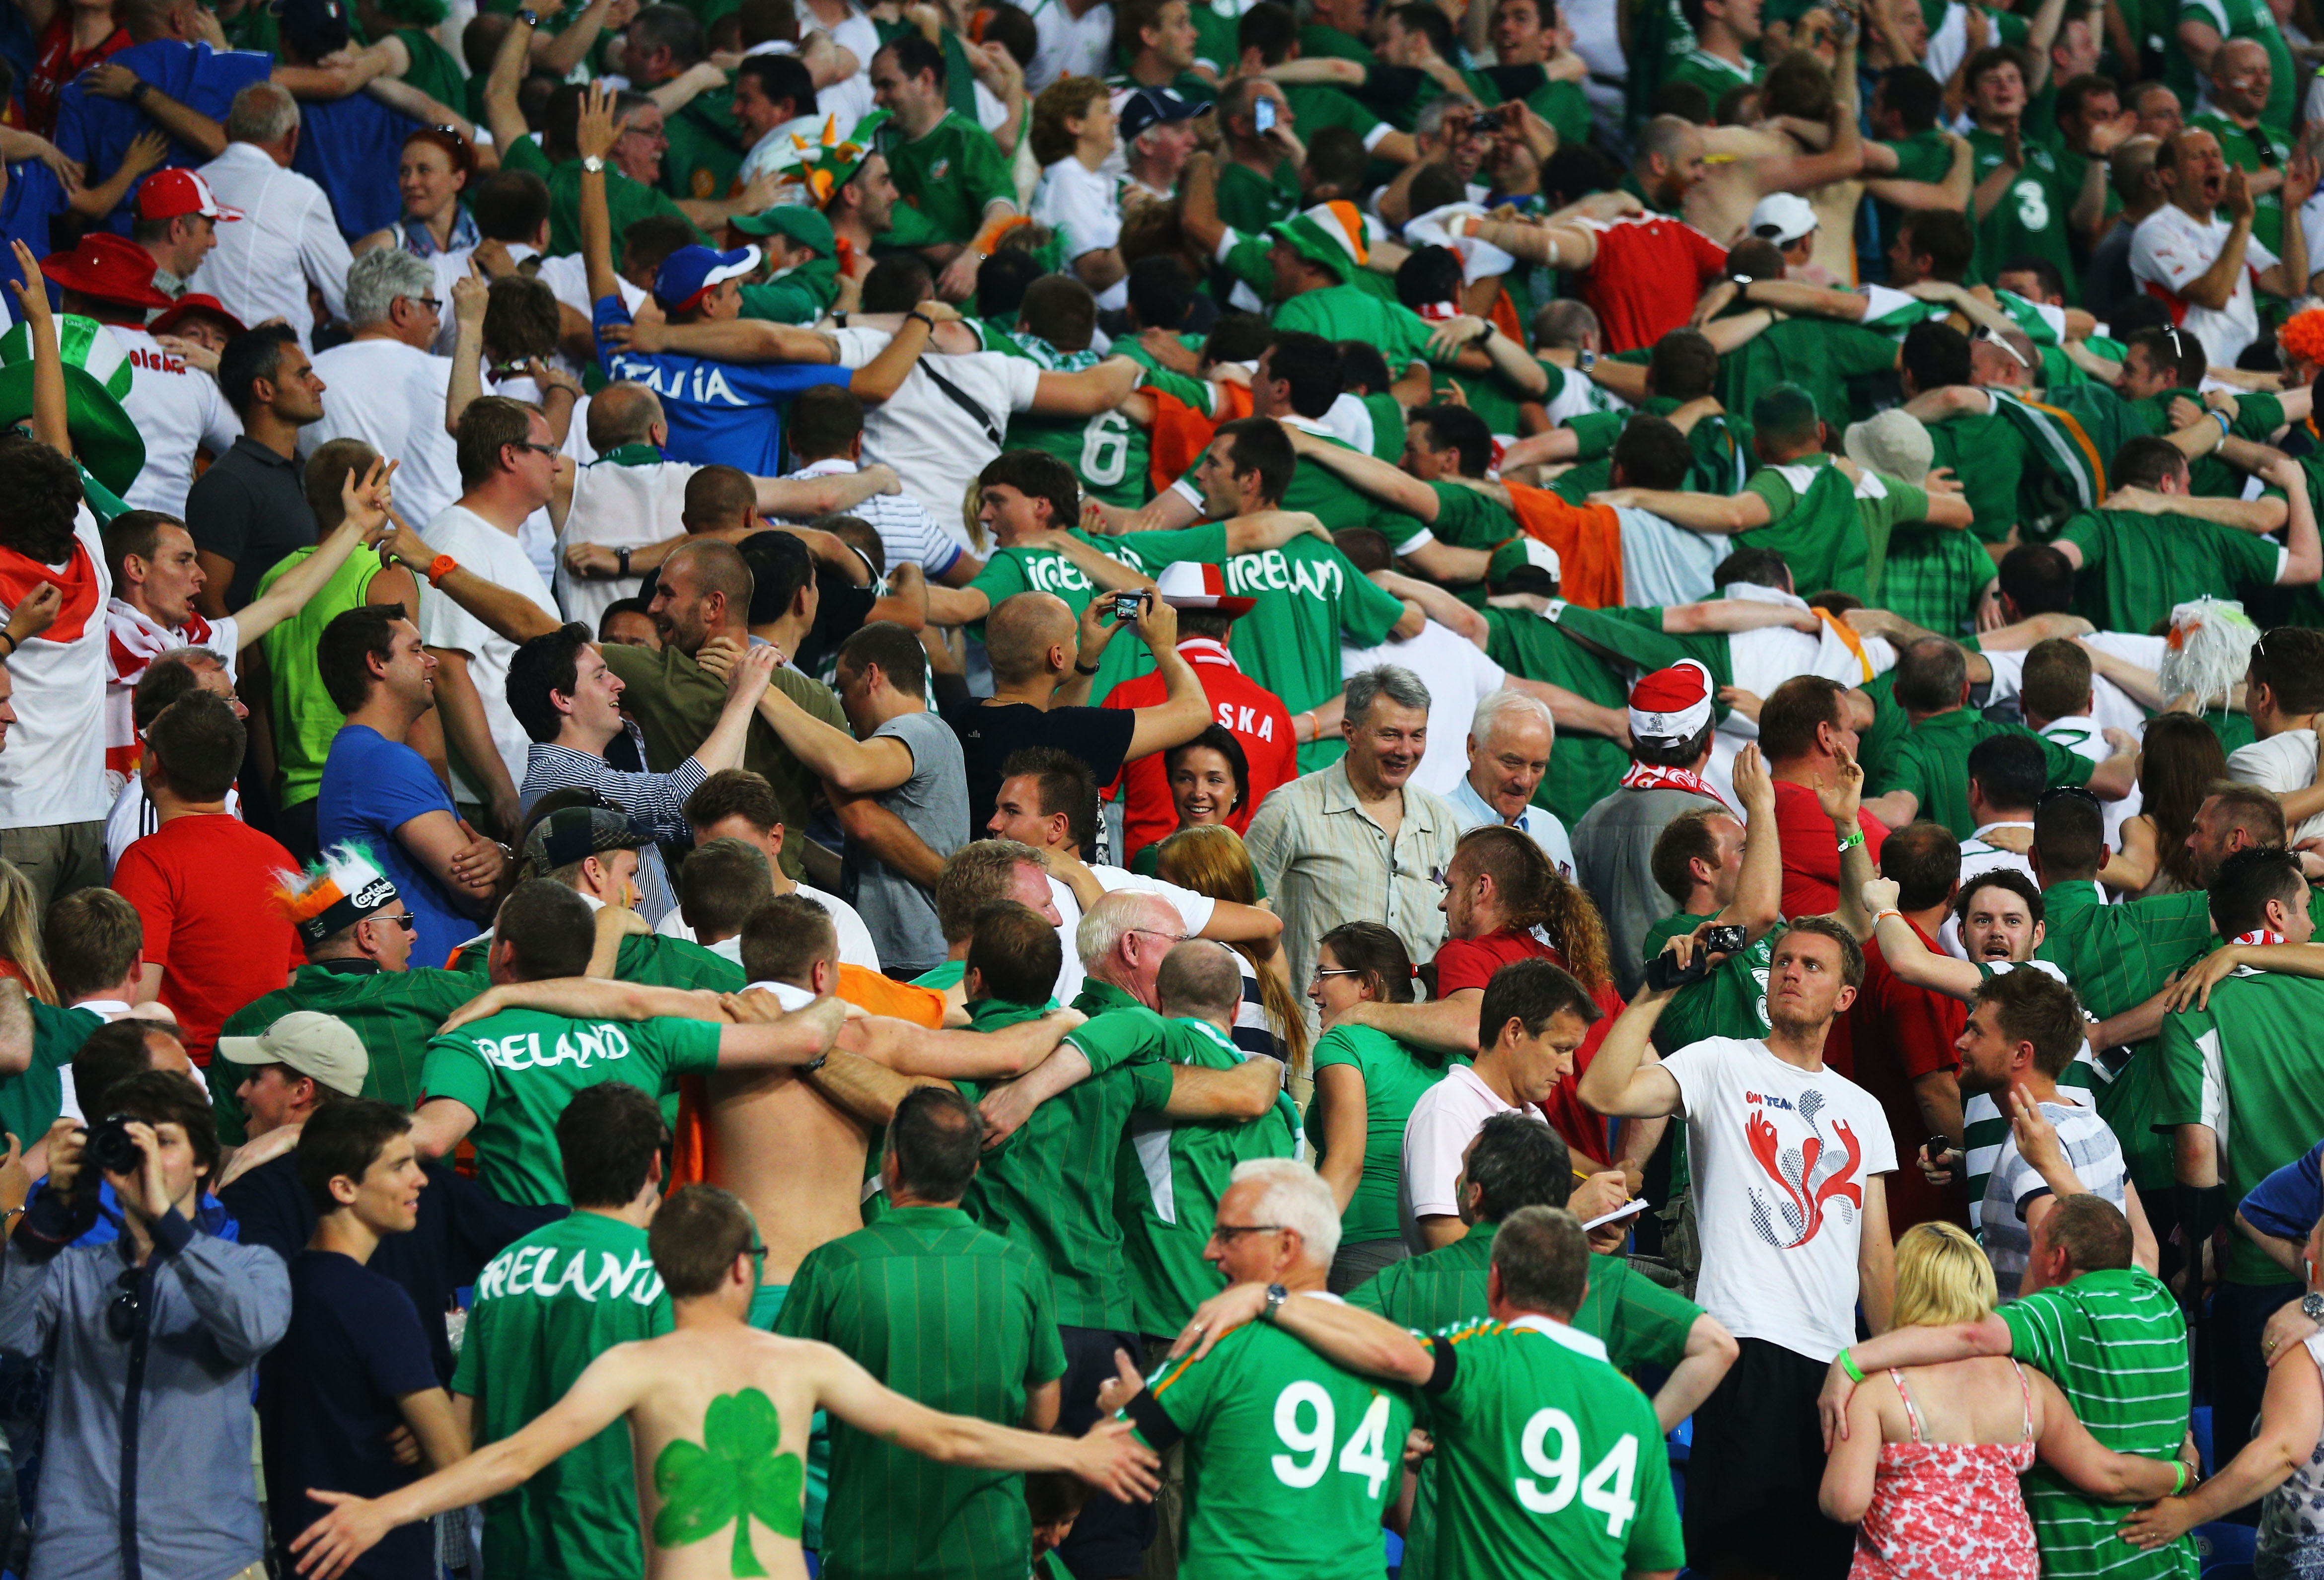 De irländska fansen var på plats som vanligt och vann läktarmatchen – igen.